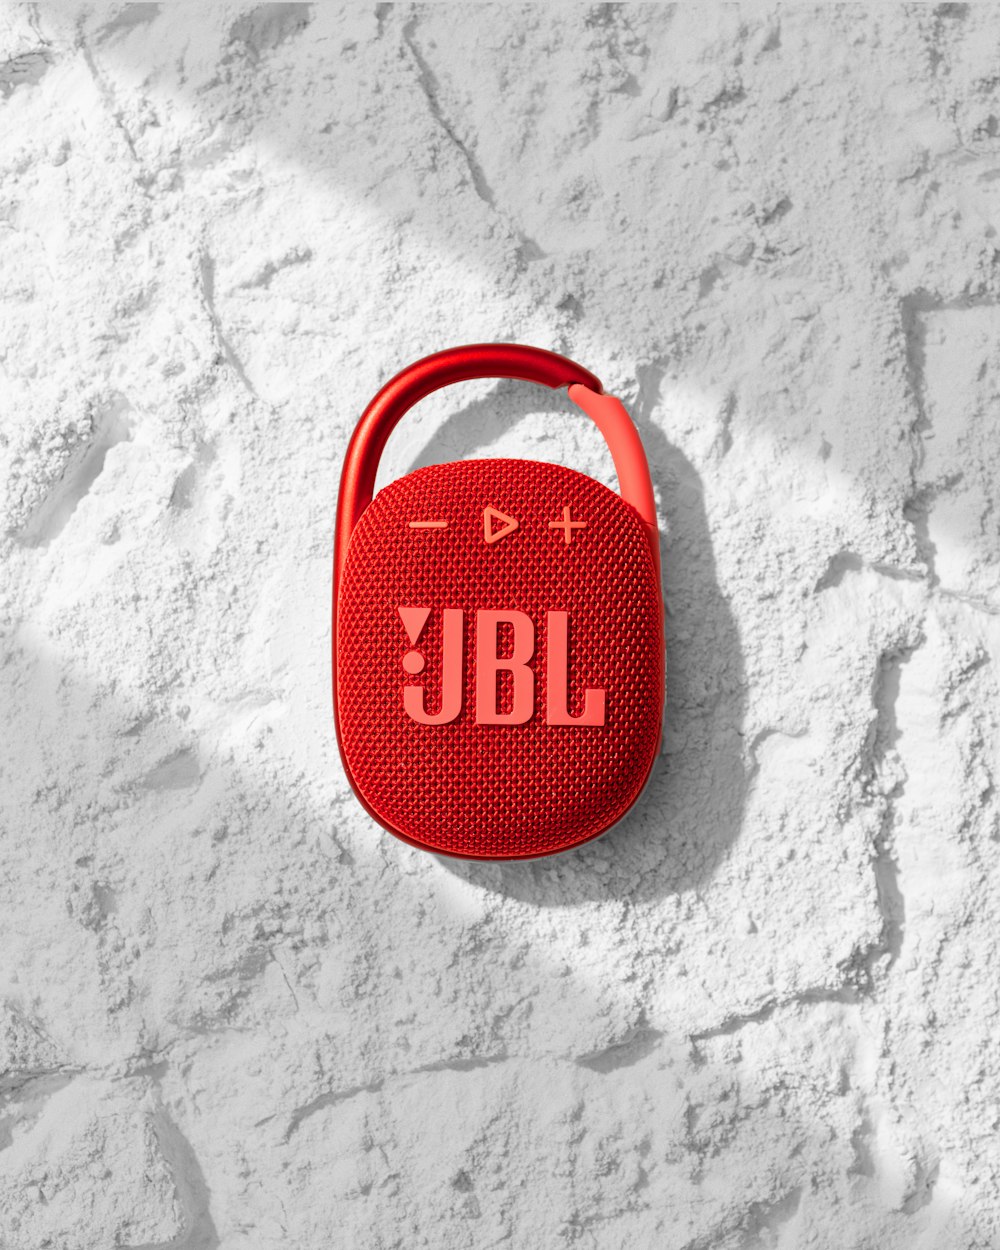 Un haut-parleur JBL rouge posé sur un mur blanc